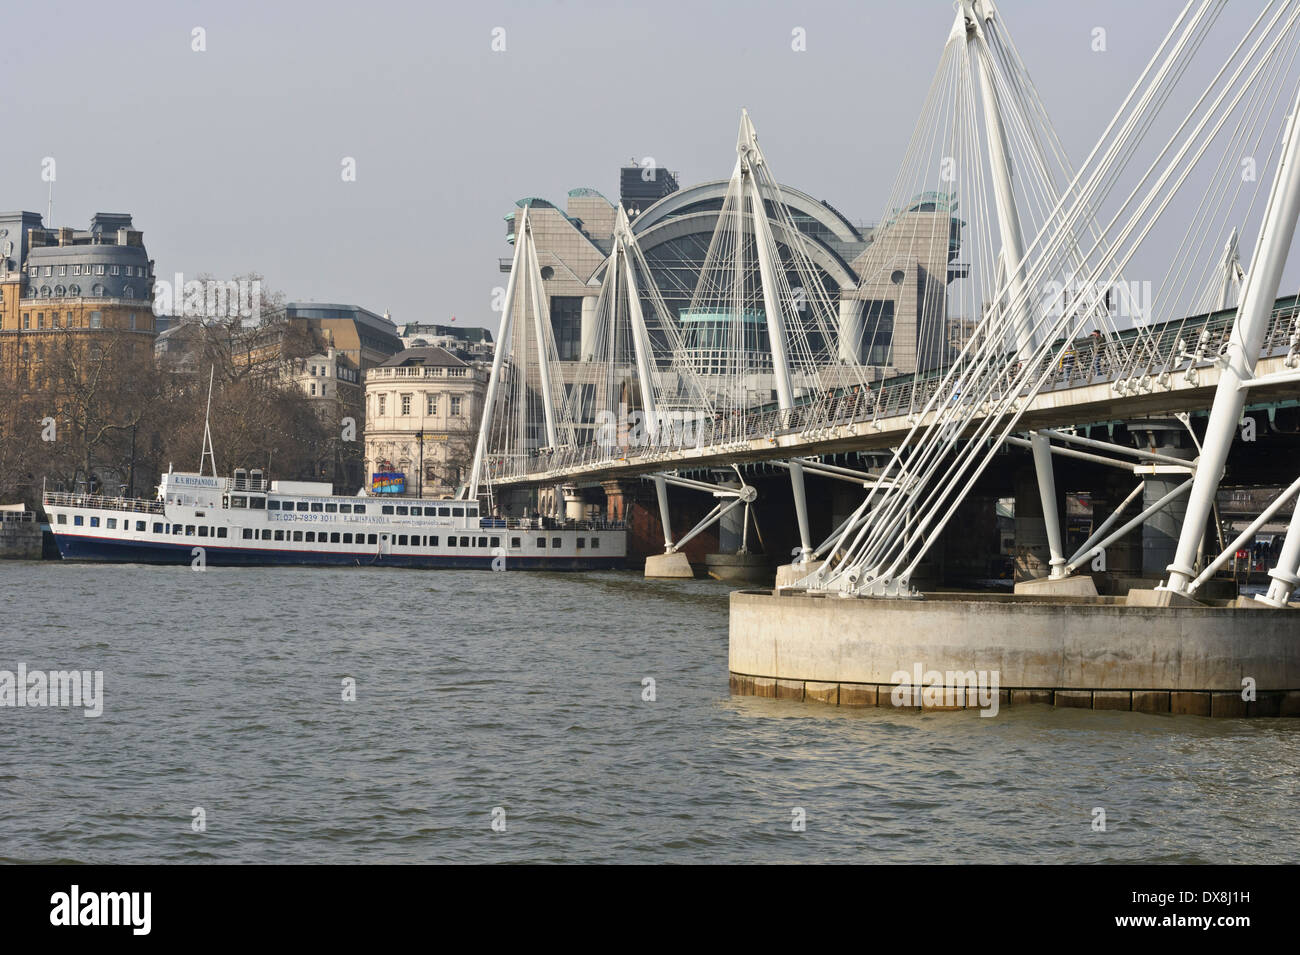 Hungerford traversant la rivière Thames à London, Angleterre, Royaume-Uni. Banque D'Images